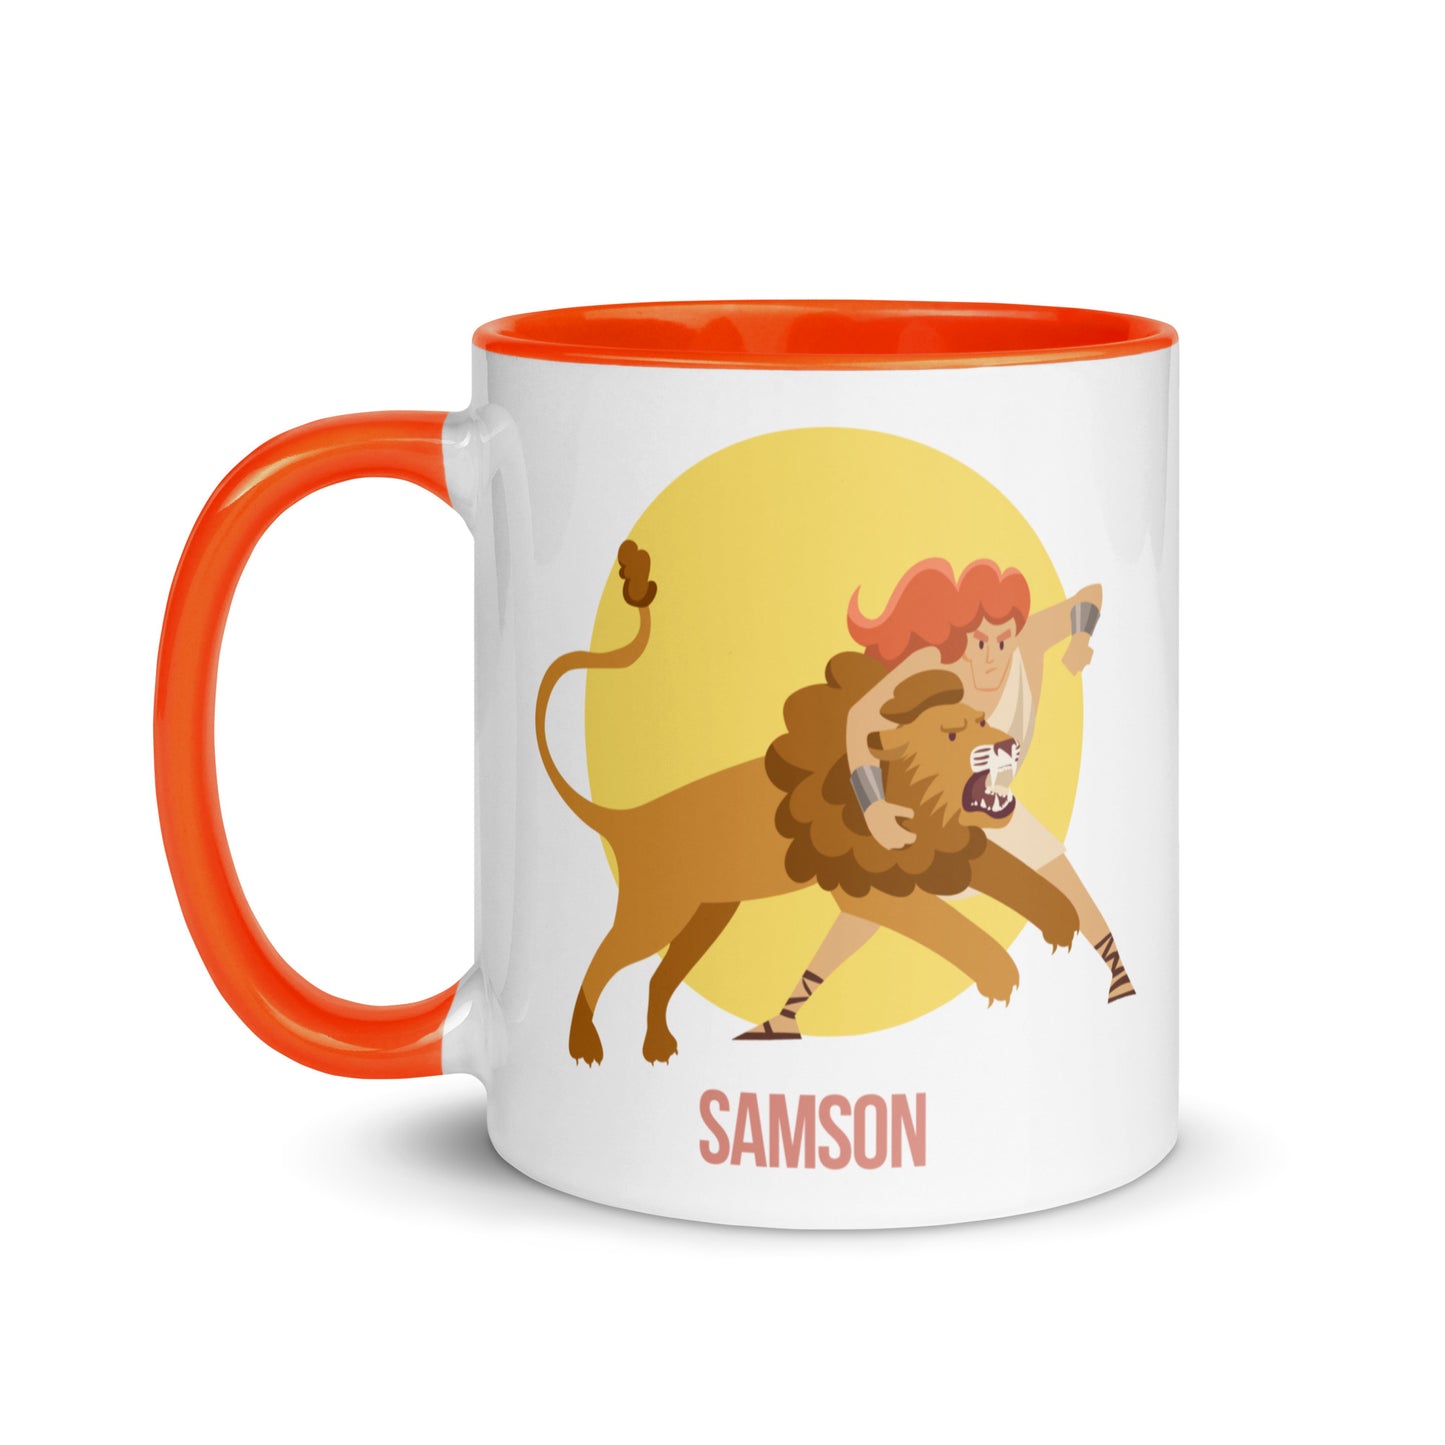 Samson Mug with Color Inside